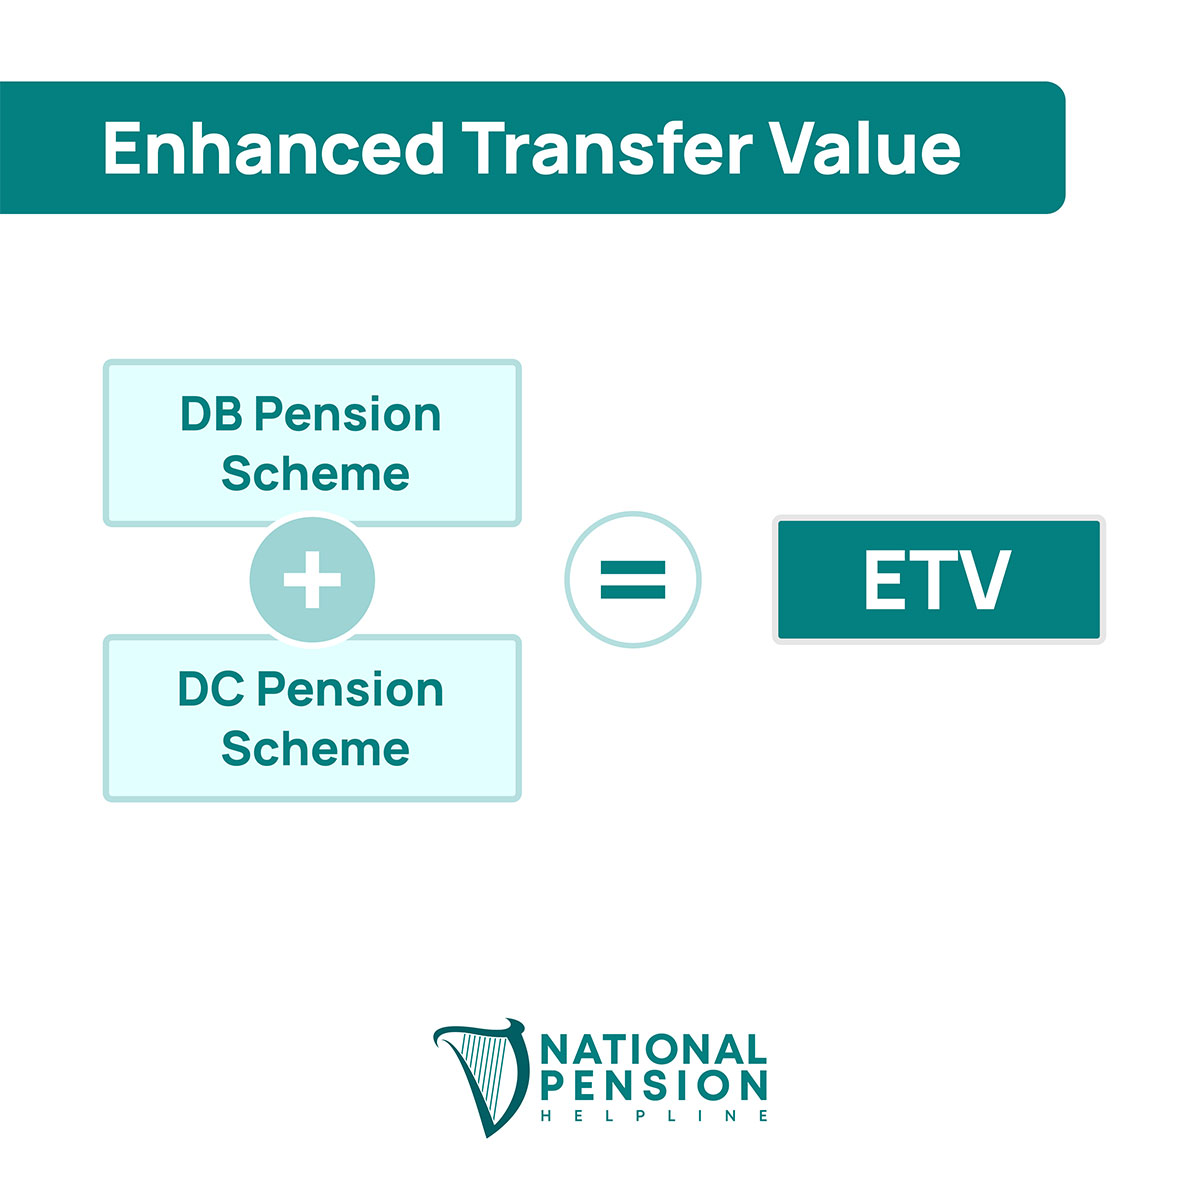 How to calculate Enhanced Transfer Value (ETV)